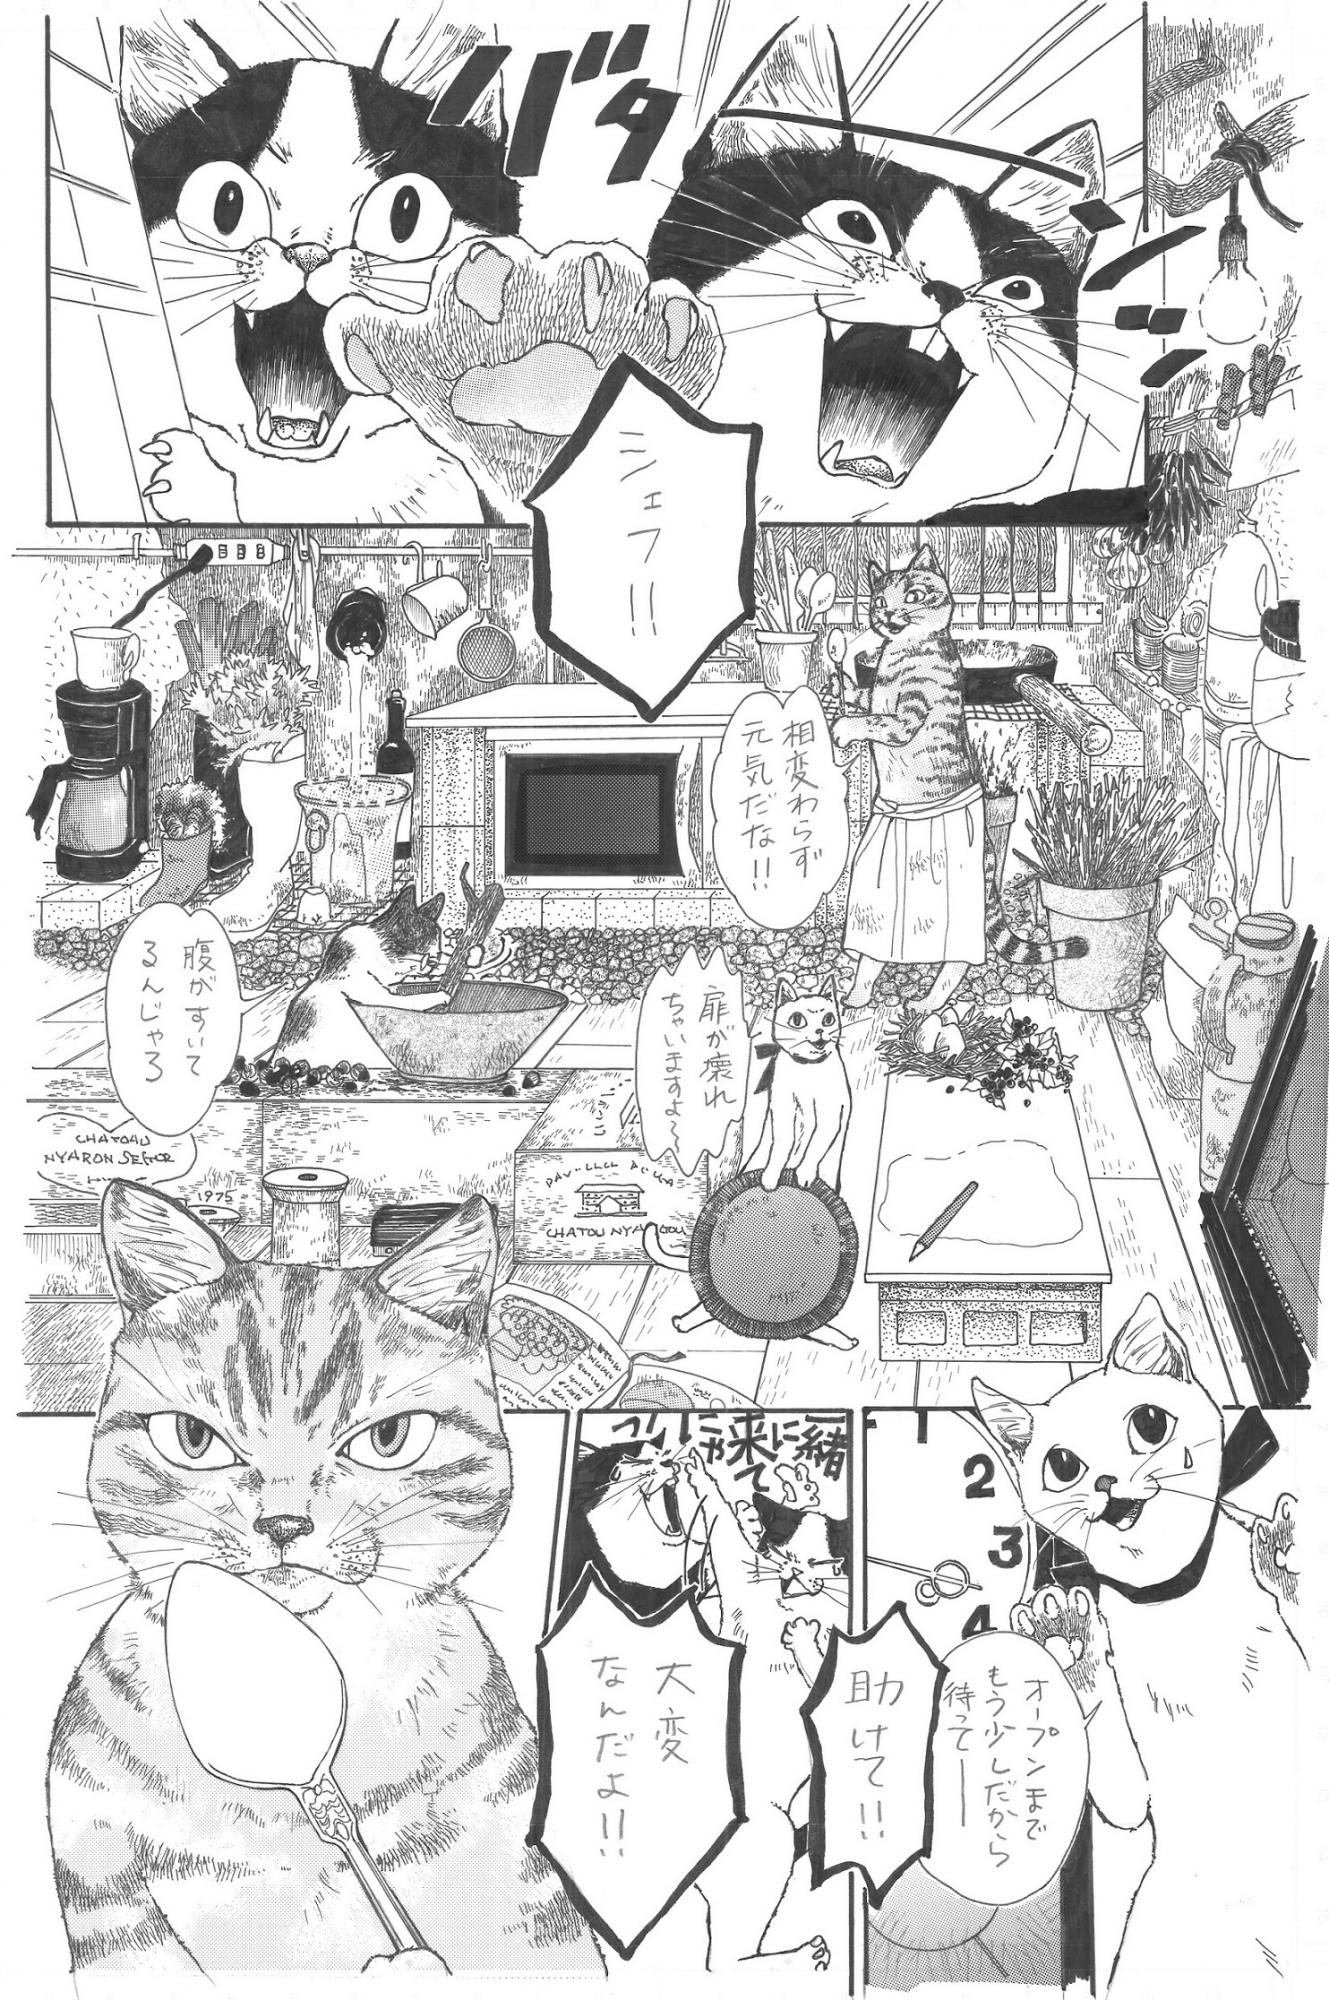 大賞　ストーリー漫画の部・一般「ねこのレストラン」　　　　　　木村由美さん　　　　（埼玉県朝霞市）